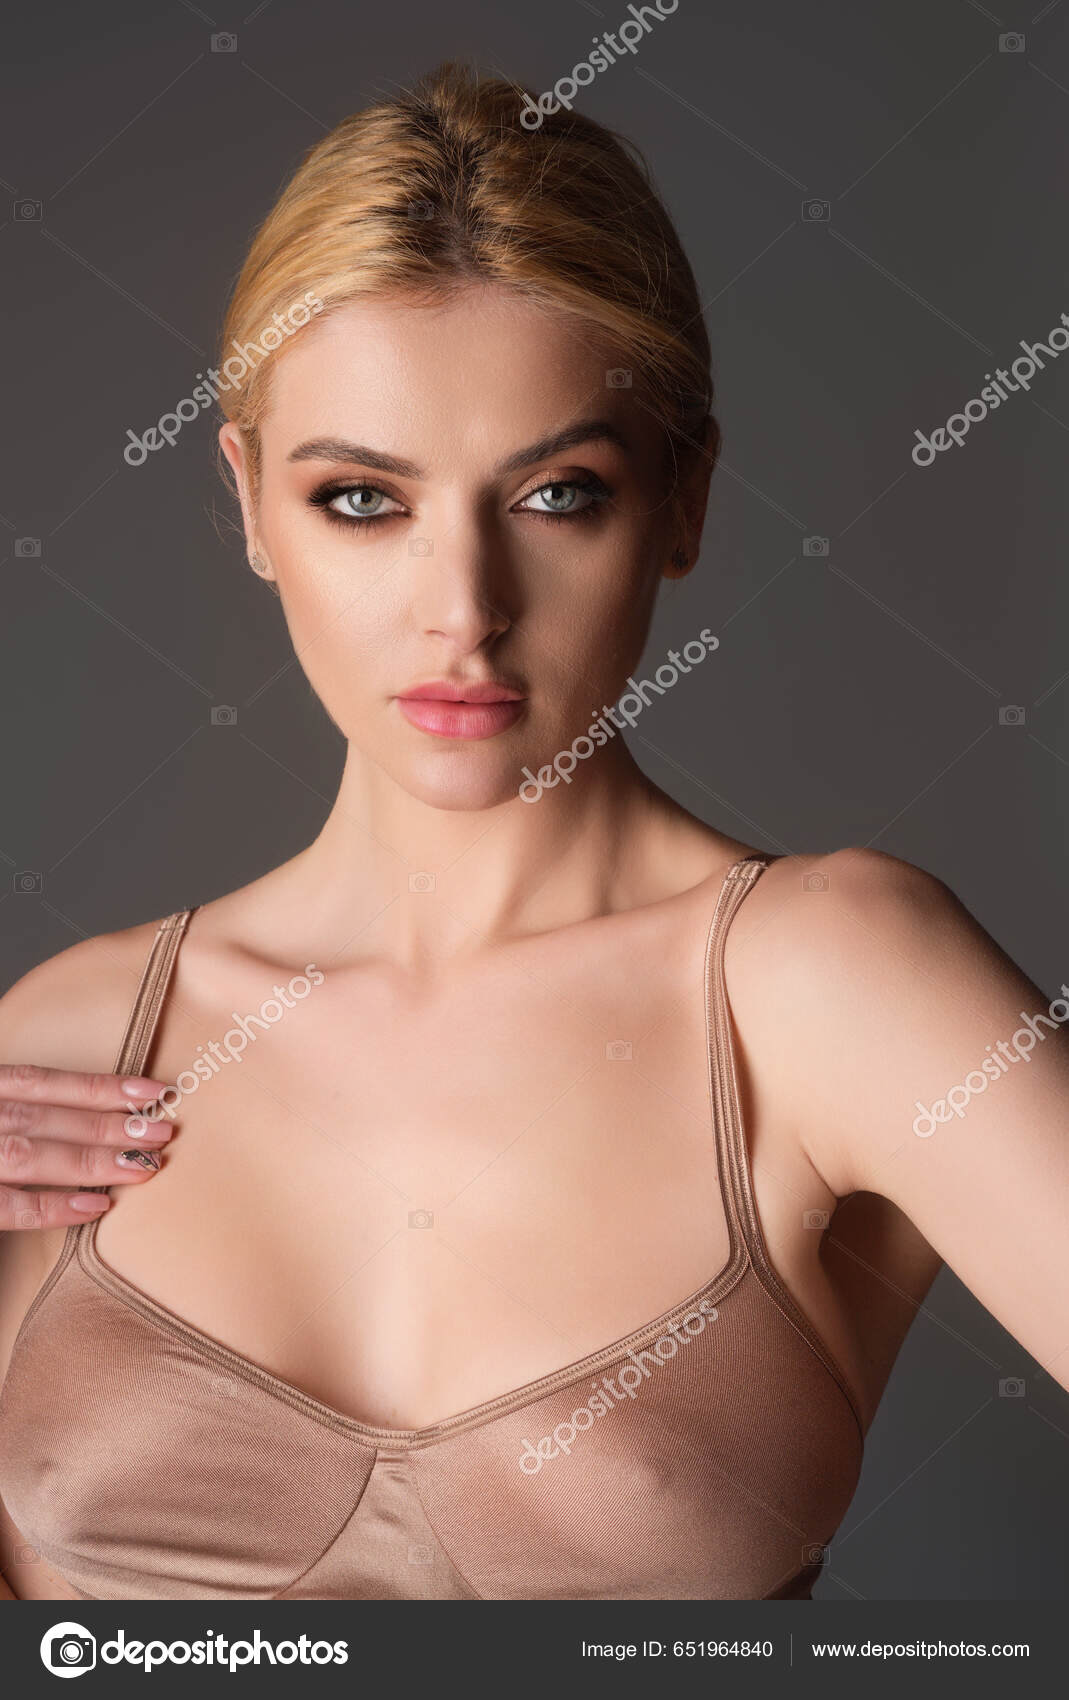 Black Bra Natural Boobs Tits Bra Model Sensual Elegant Young fotos